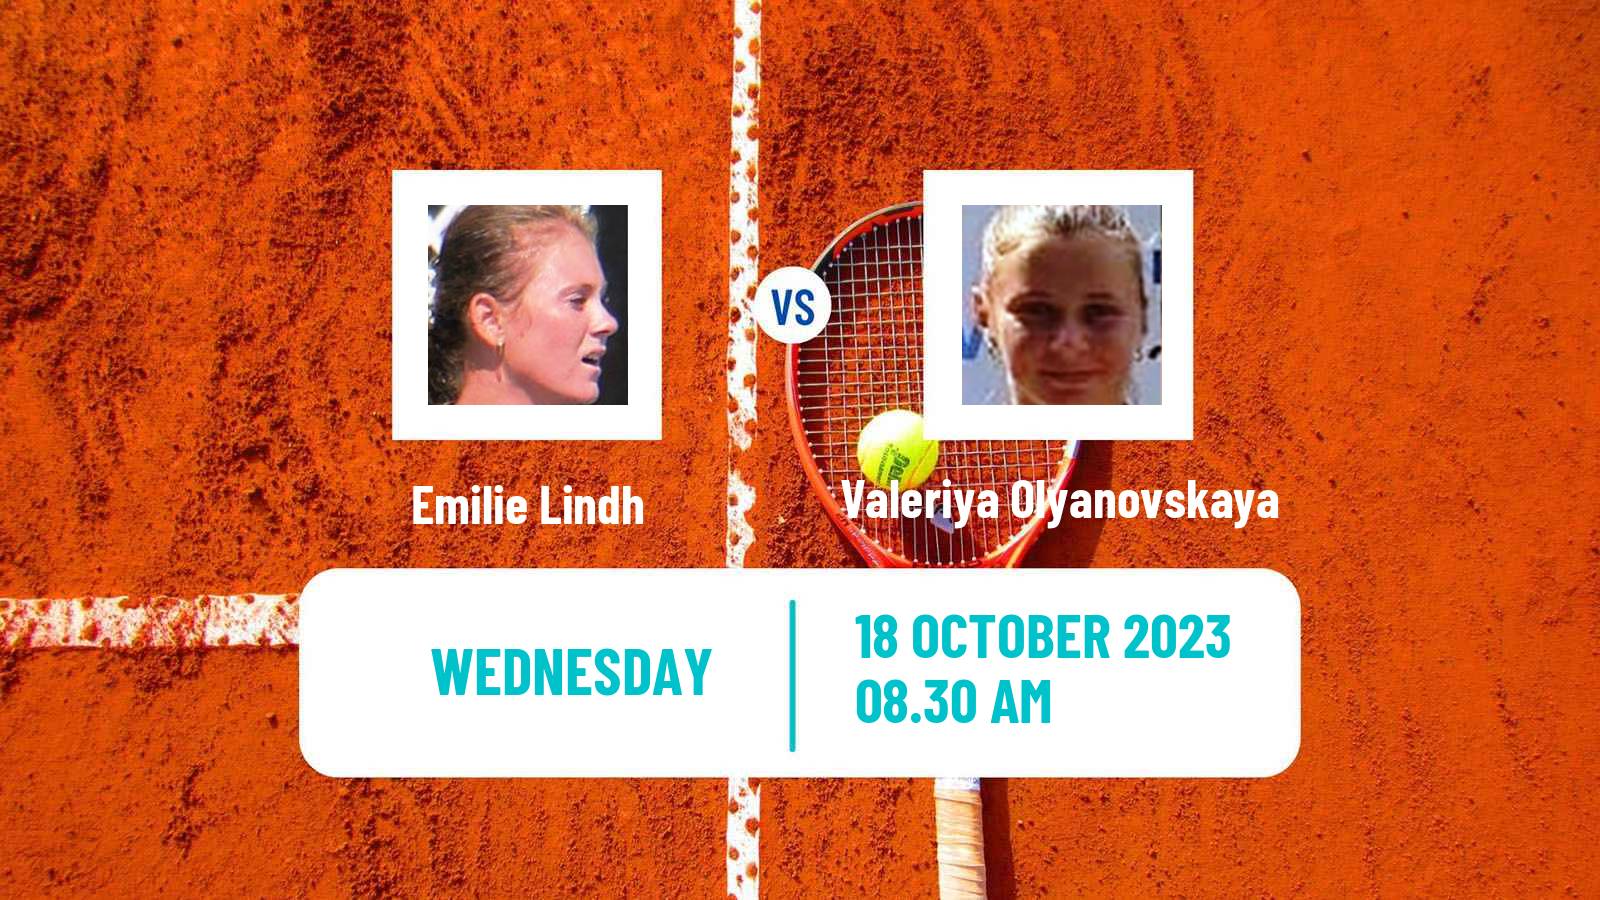 Tennis ITF W25 Faro Women Emilie Lindh - Valeriya Olyanovskaya